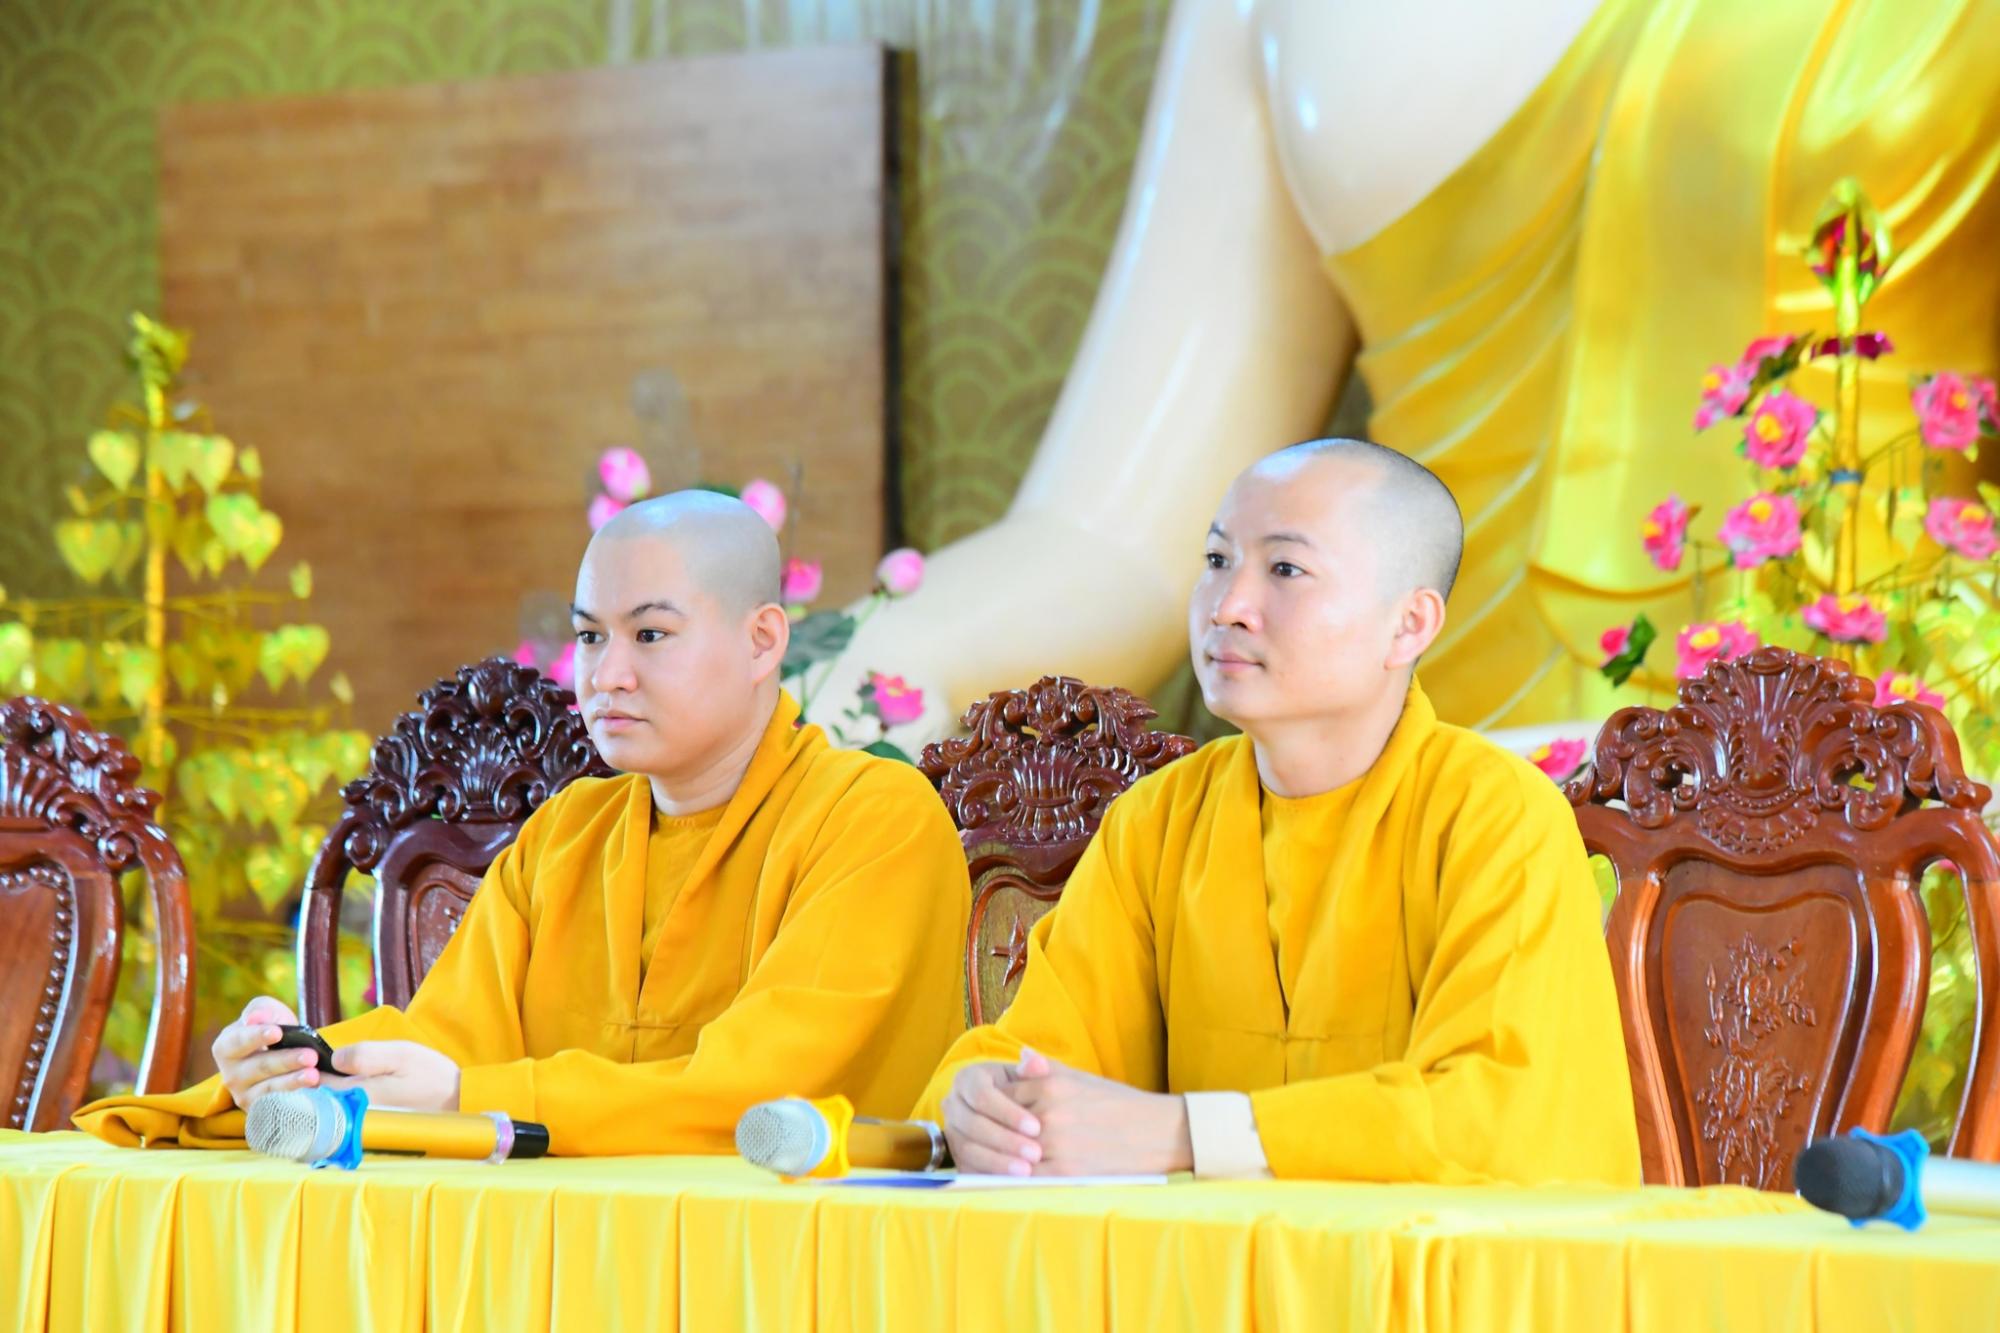 Chương trình "Ươm mầm trí tuệ" tại chùa Quan Âm Đông Hải (Sóc Trăng)